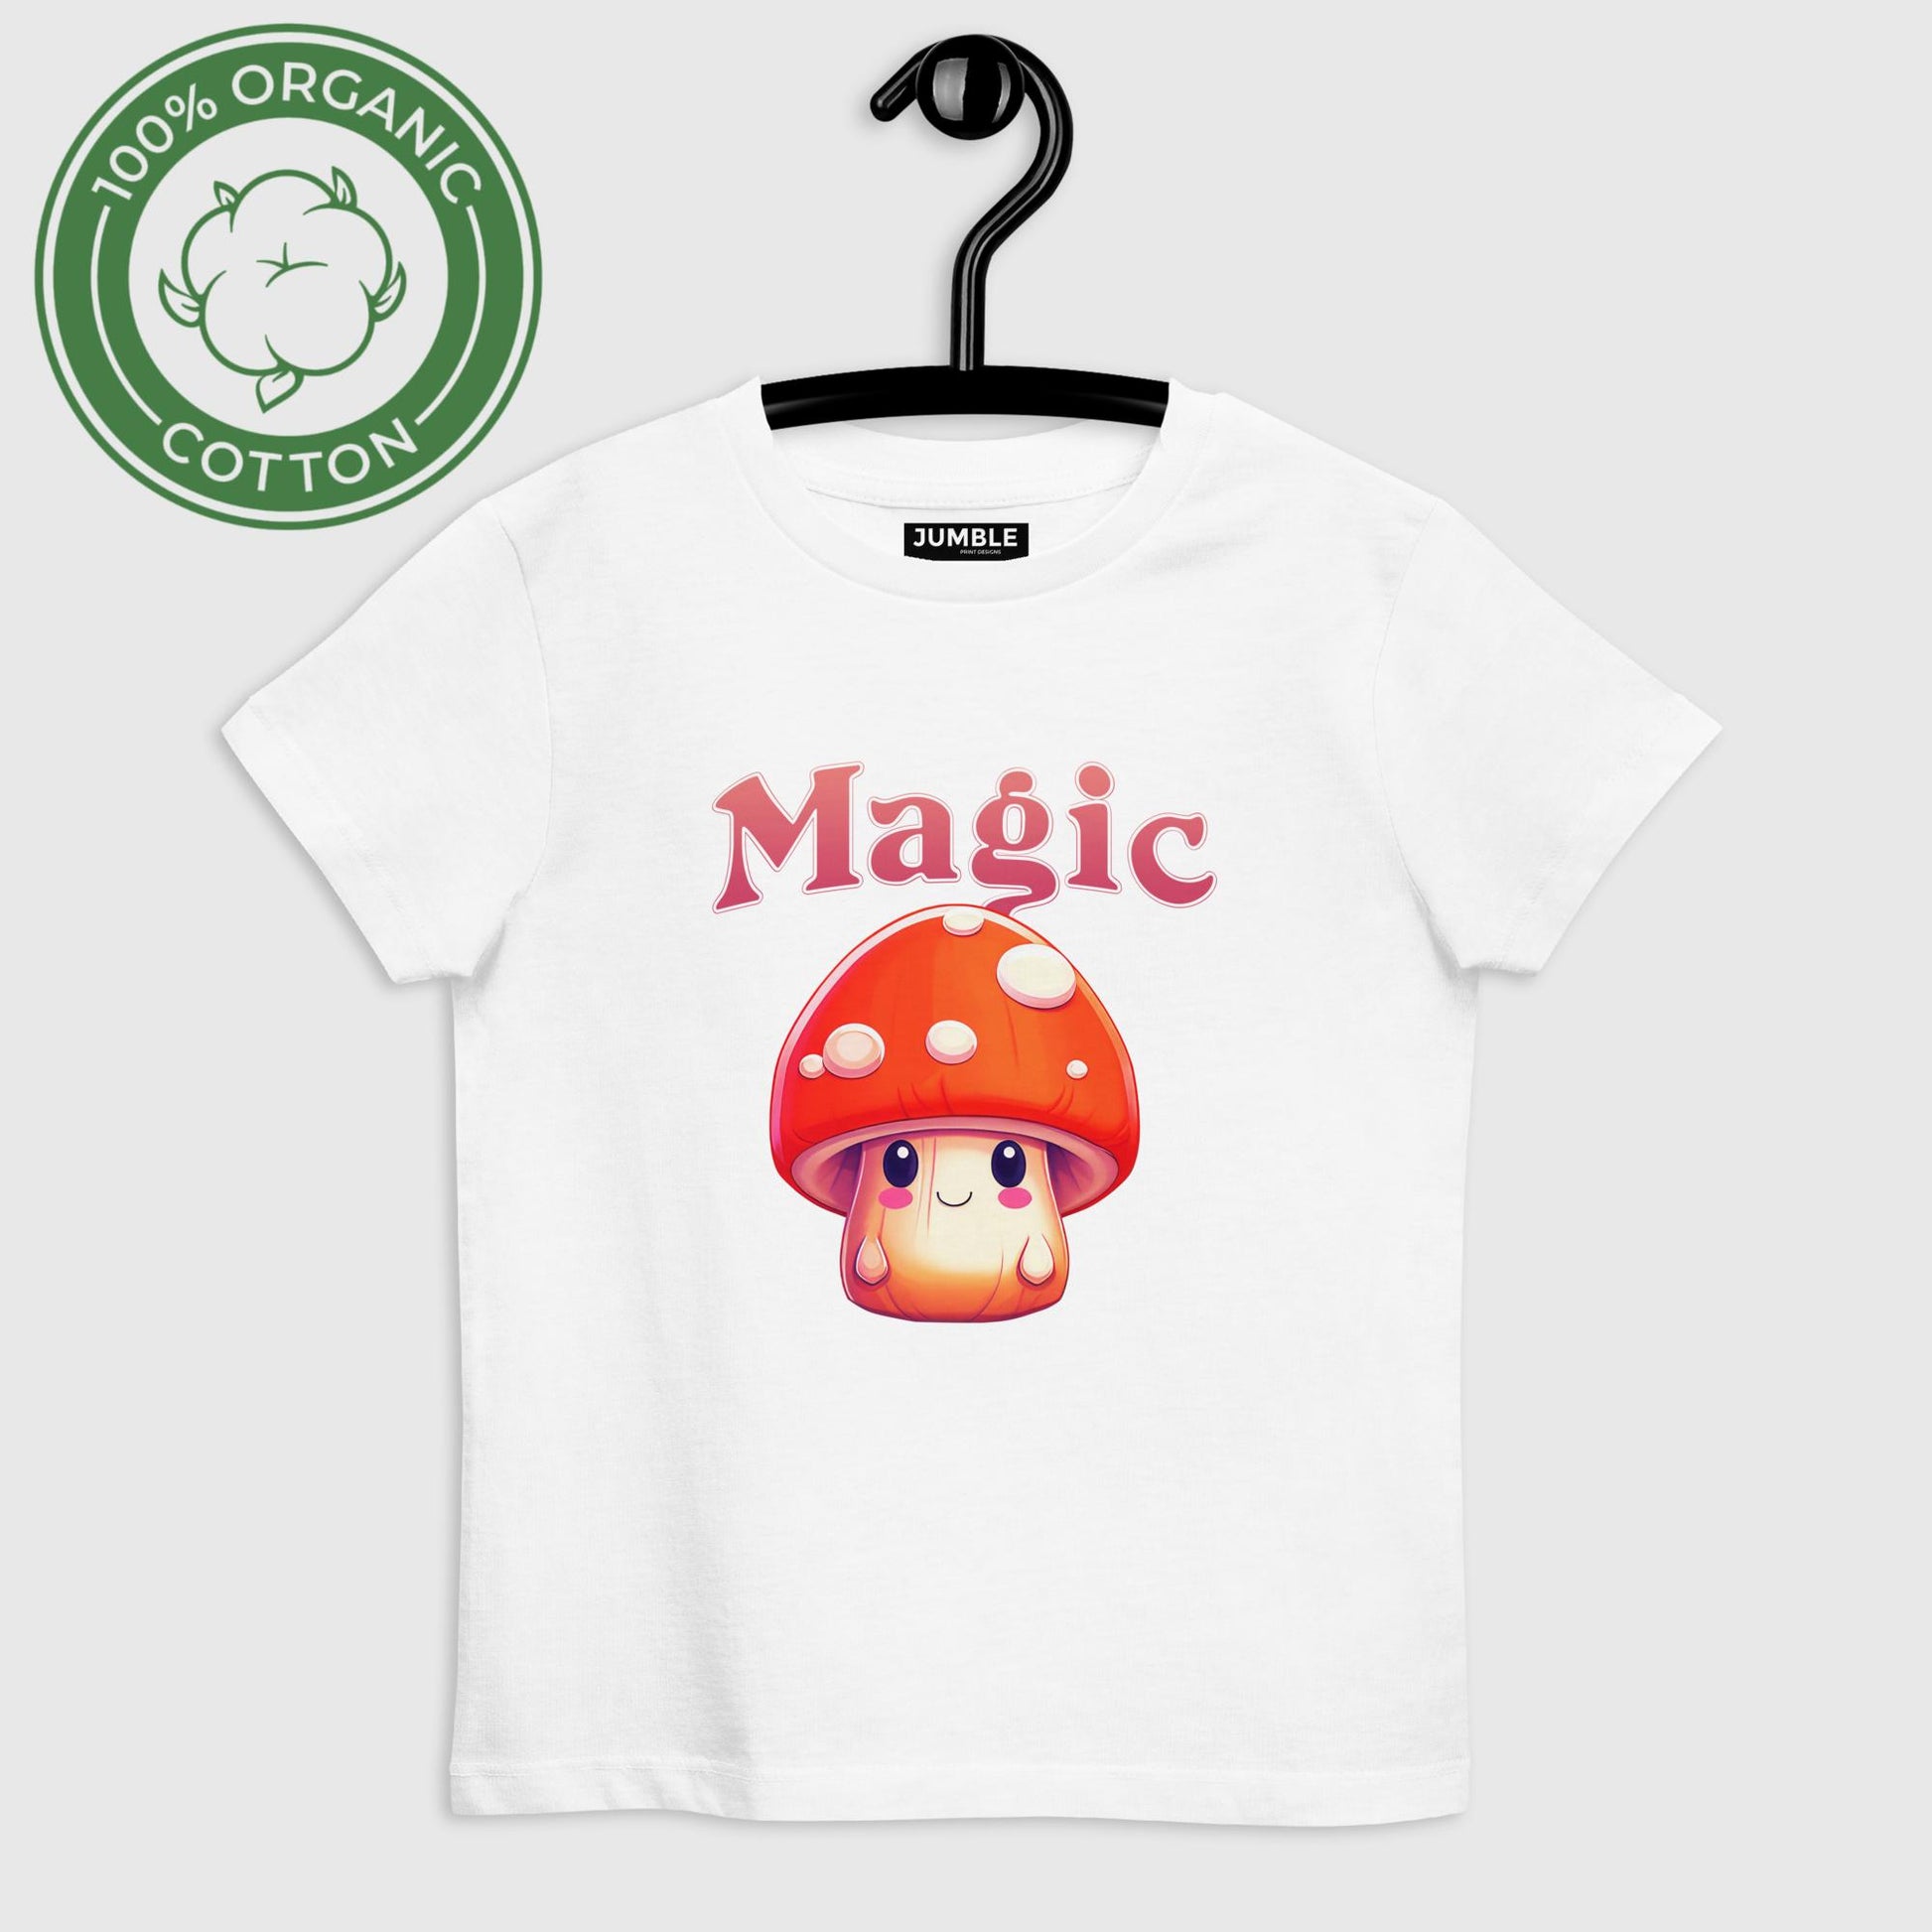 Just Magic Organic cotton kids t-shirt displayed on hanger, in white